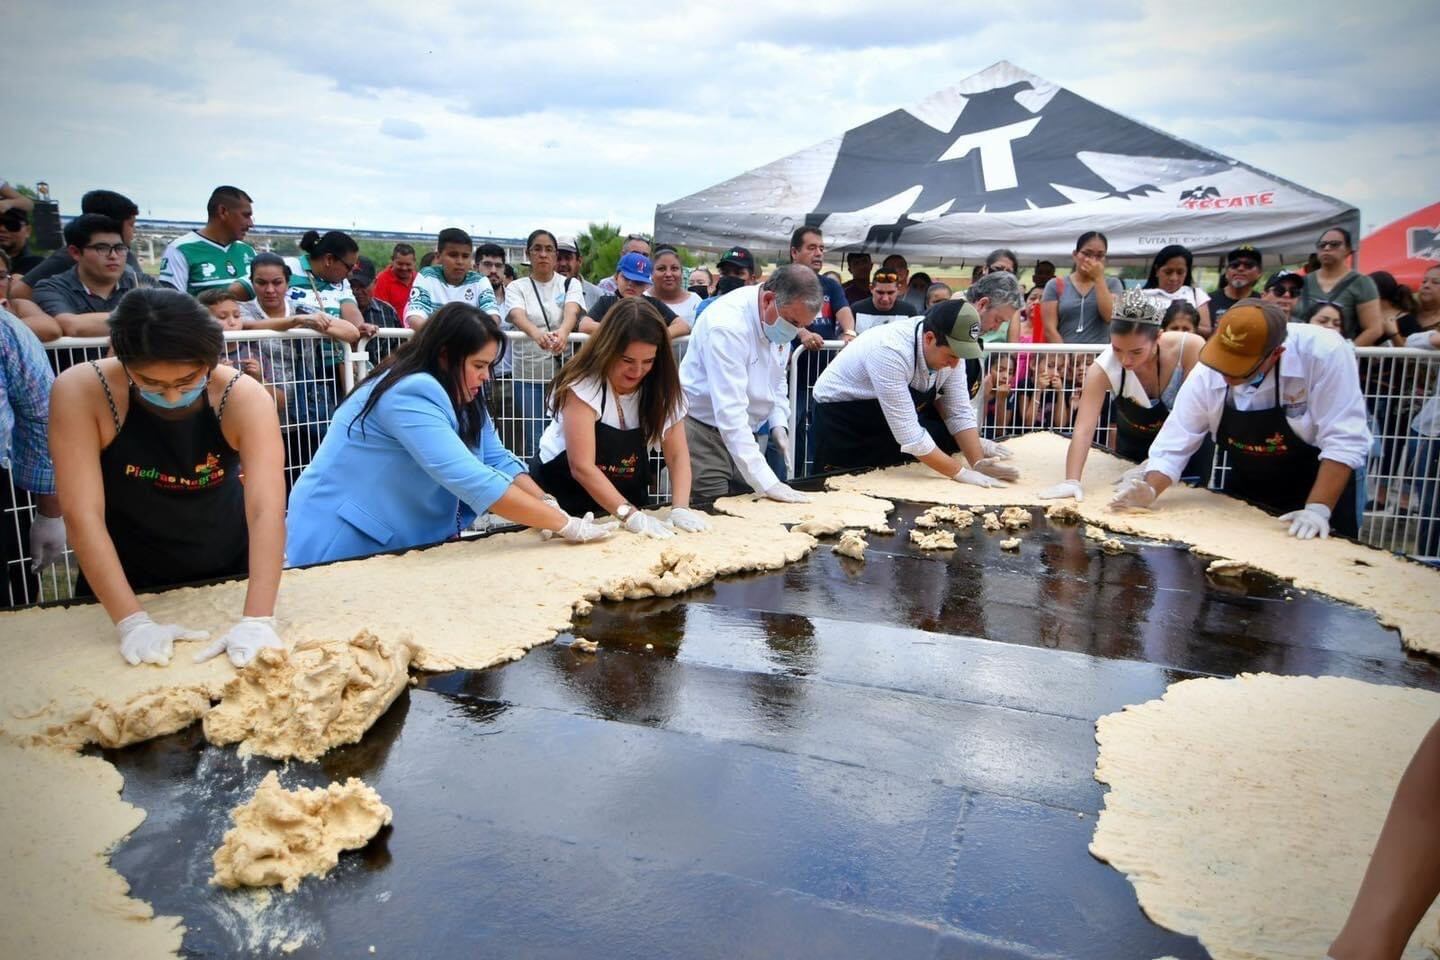 El nacho más grande del mundo se crea en un comal específico entre decenas de personas en el municipio de Piedras Negras, Coahuila.